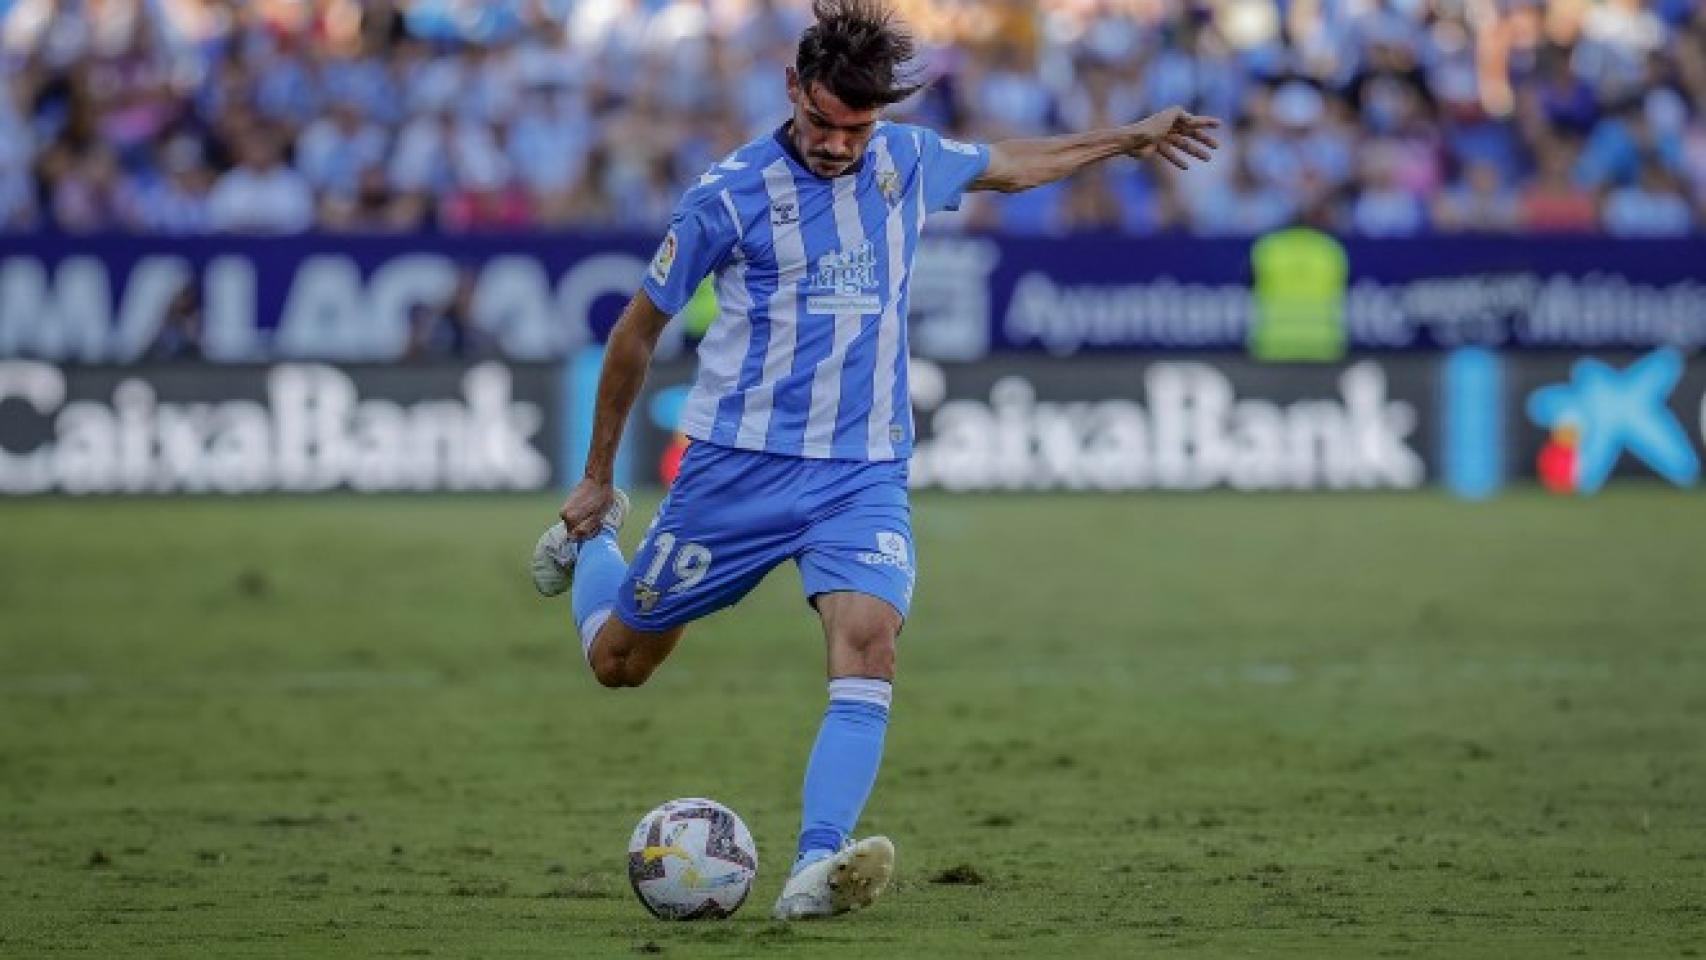 Jozabed, jugador del Málaga CF, durante un partido en La Rosaleda